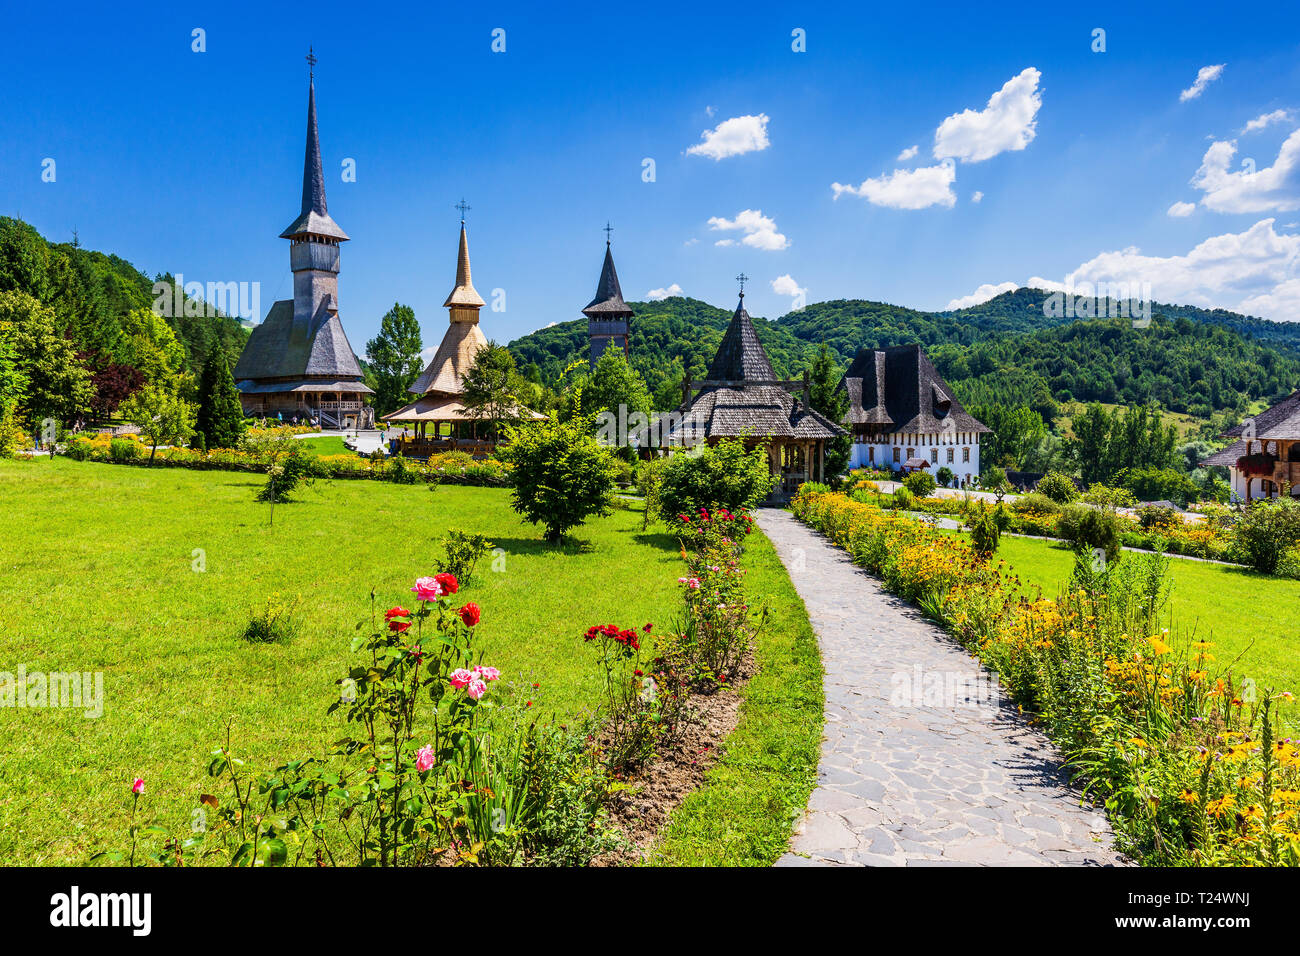 Barsana, Rumänien. Holzkirchen in Barsana Kloster. Der maramures Region. Stockfoto